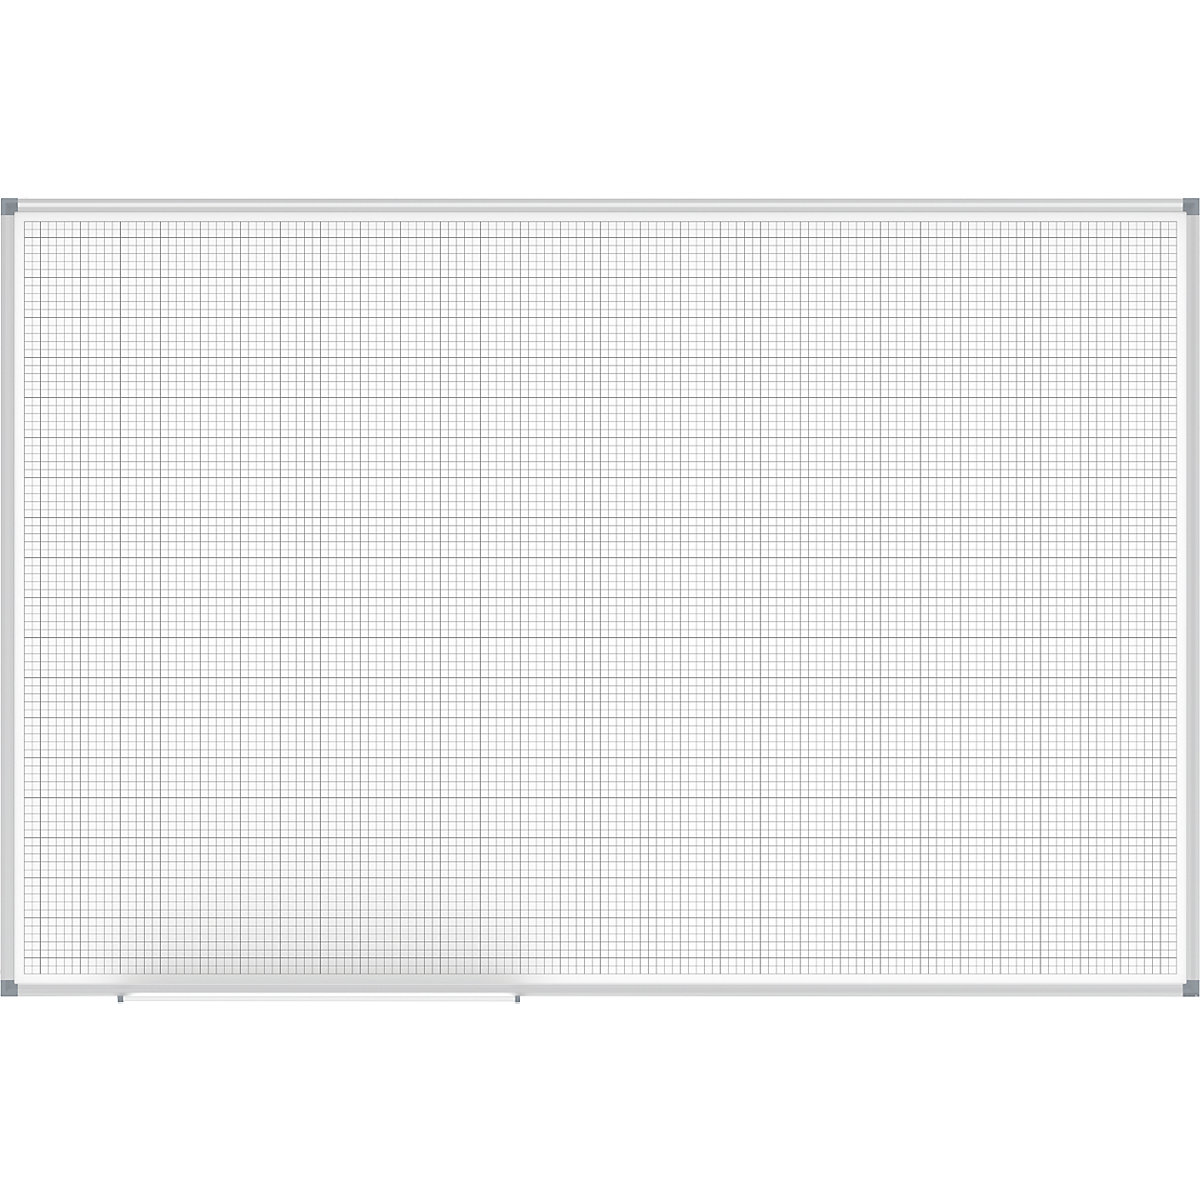 MAULstandard grid board, white – MAUL, grid 10 x 10 / 50 x 50 mm, WxH 1500 x 1000 mm-3